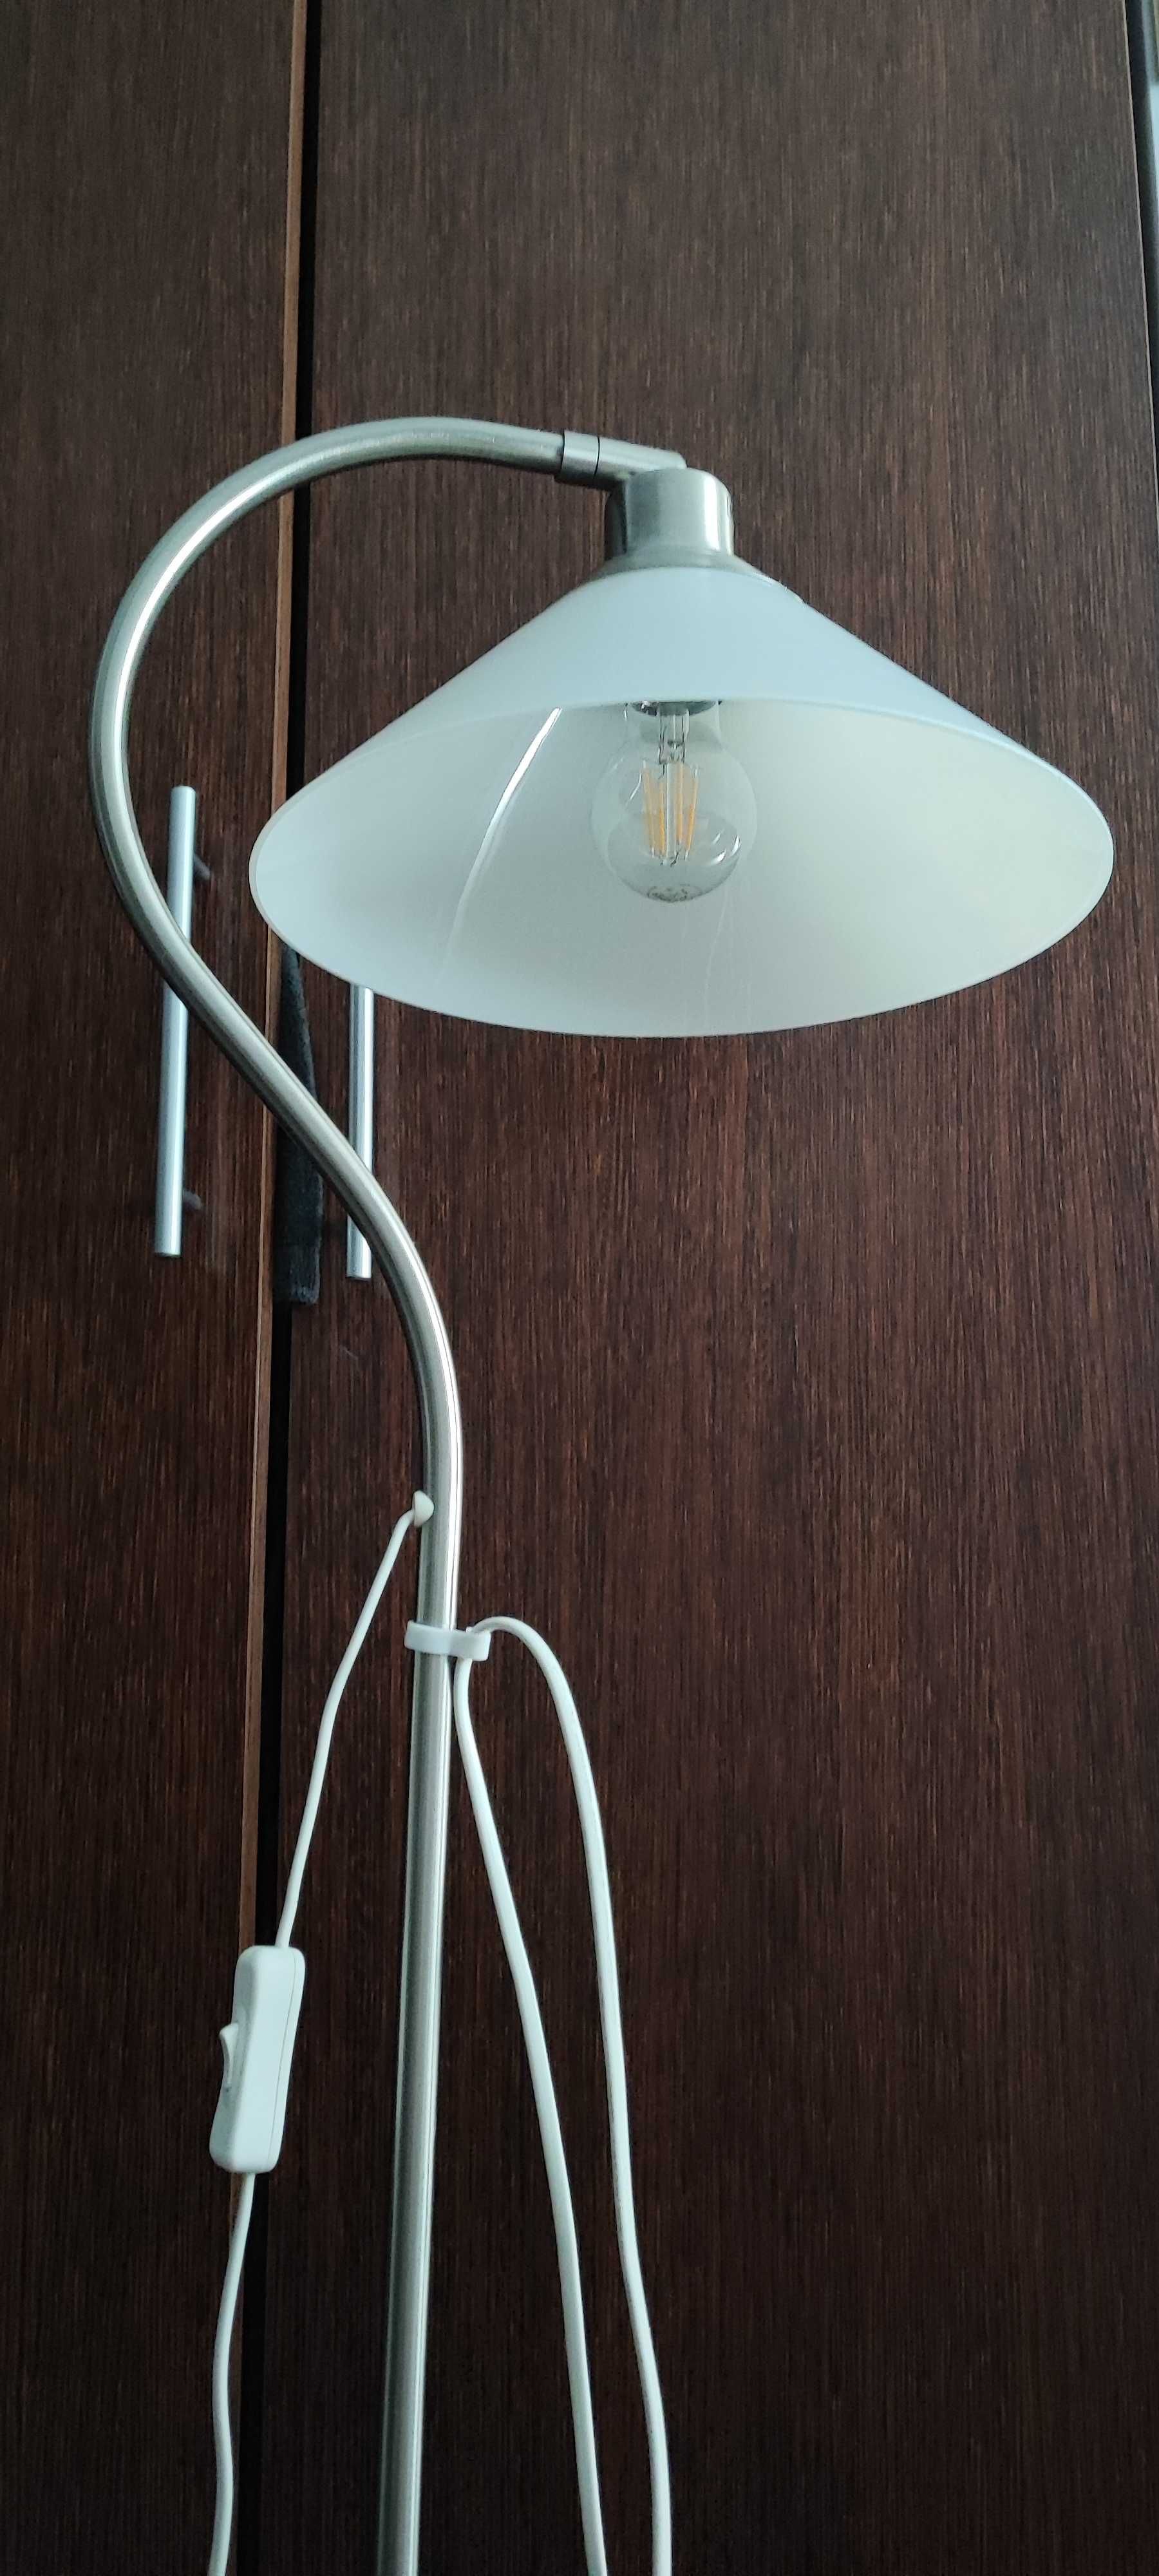 Lampa stojąca IKEA (model retro) szklany plafon. STAN IDEALNY